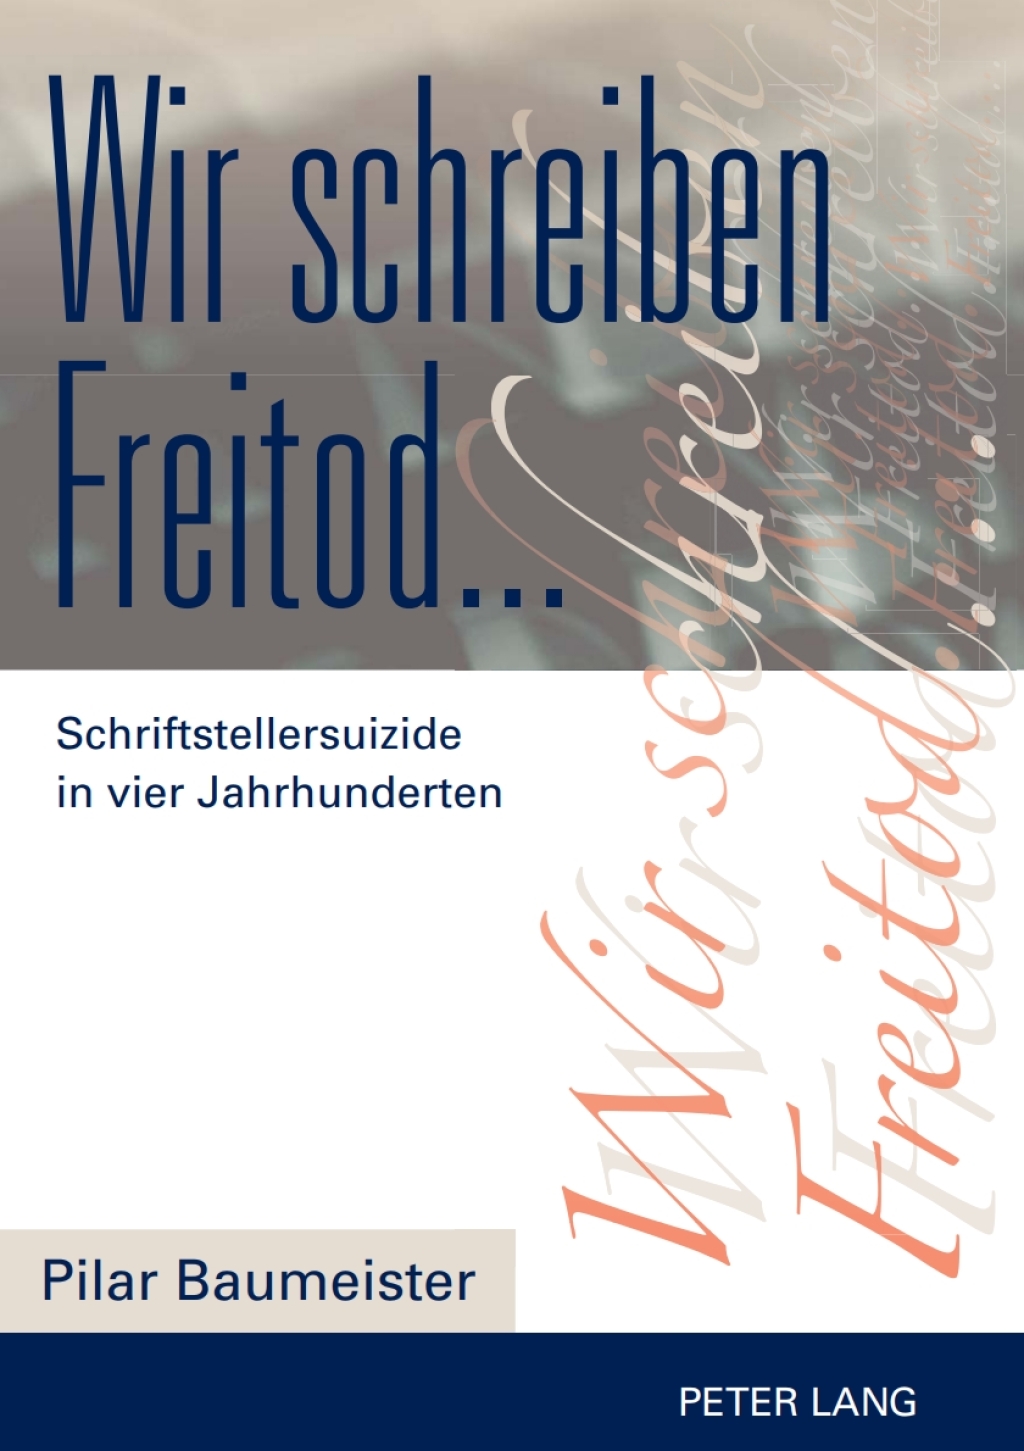 Wir schreiben Freitod... - 1st Edition (eBook)